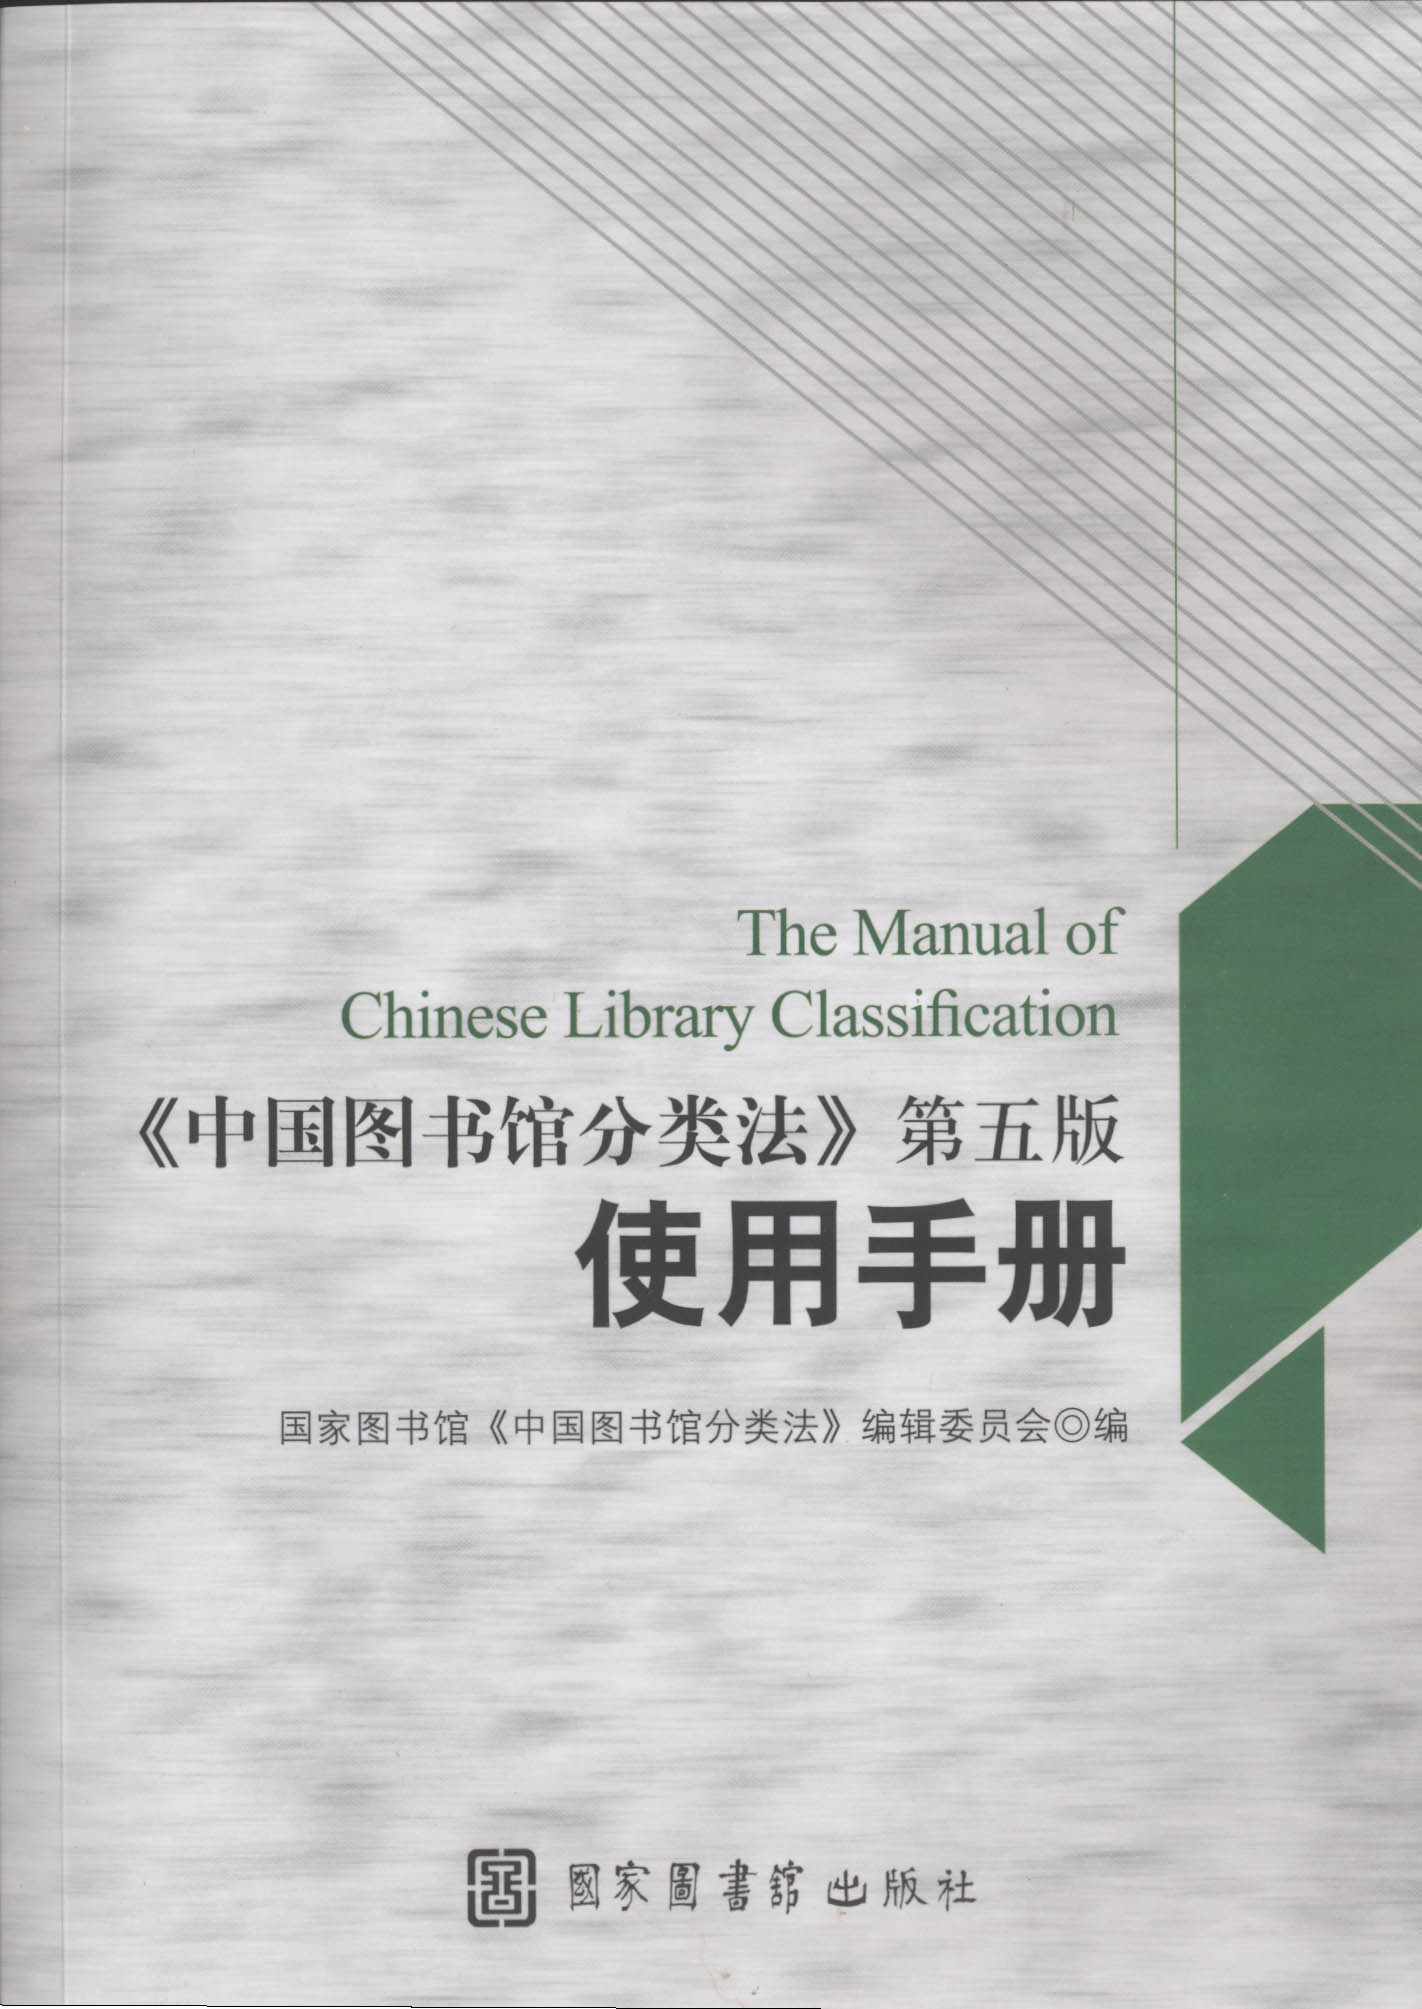 《中国图书馆分类法》第五版使用手册